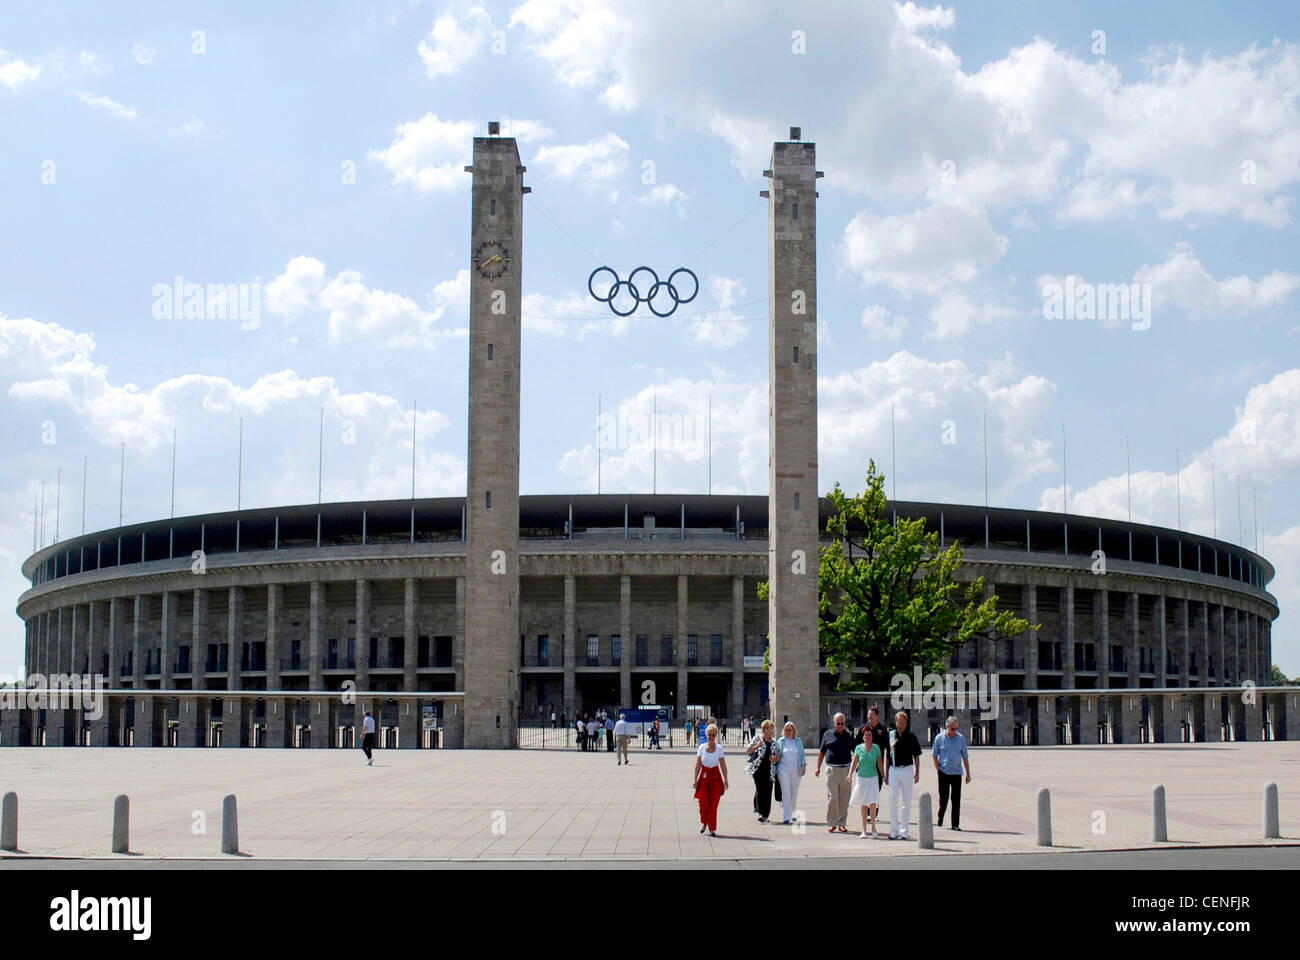 Stade olympique de Berlin avec les anneaux olympiques sur l'entrée principale. Banque D'Images